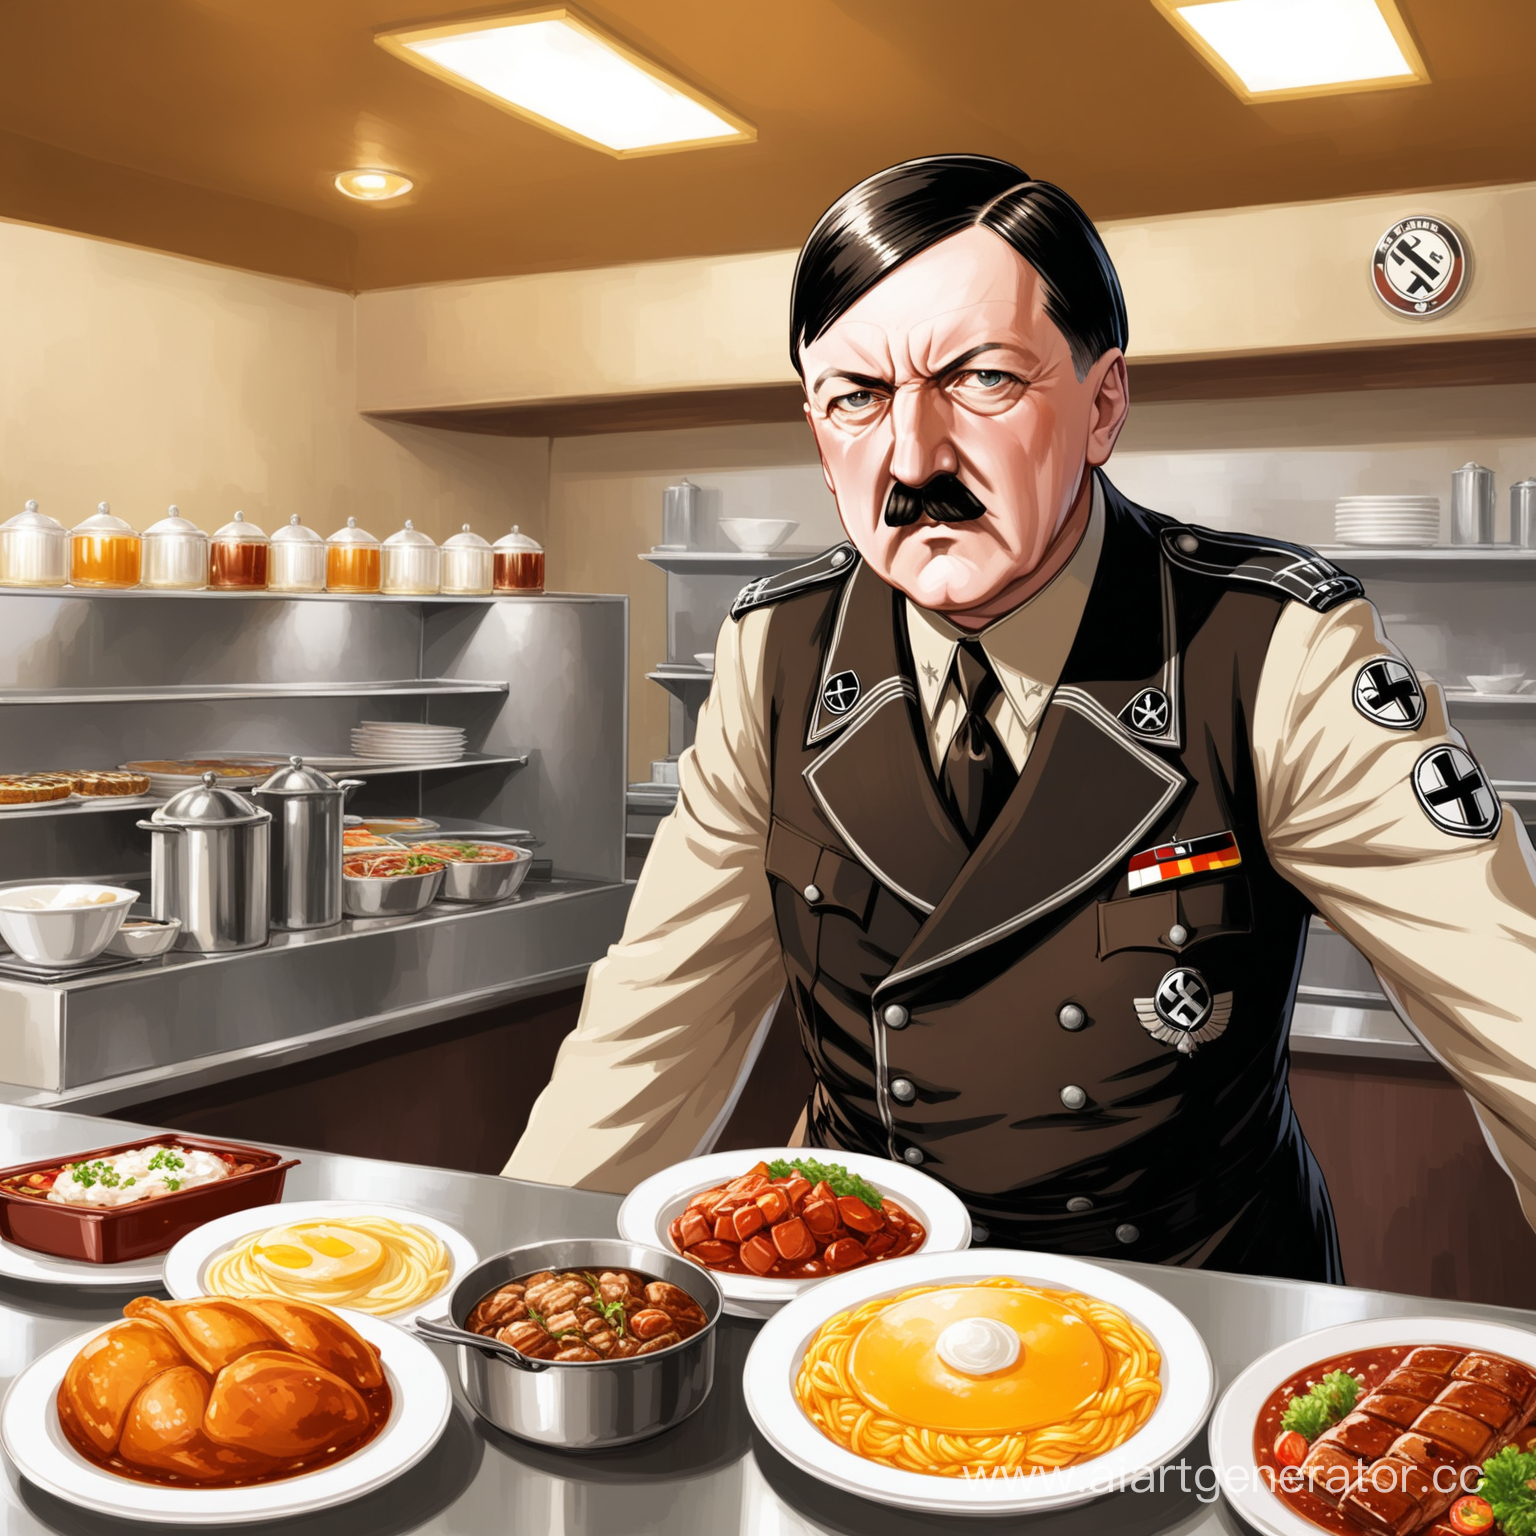 Адольф Гитлер  в столовой за стойкой накладывает еду германской культуры  и рядом другие виды блюд с напитками из немецкой столовой 